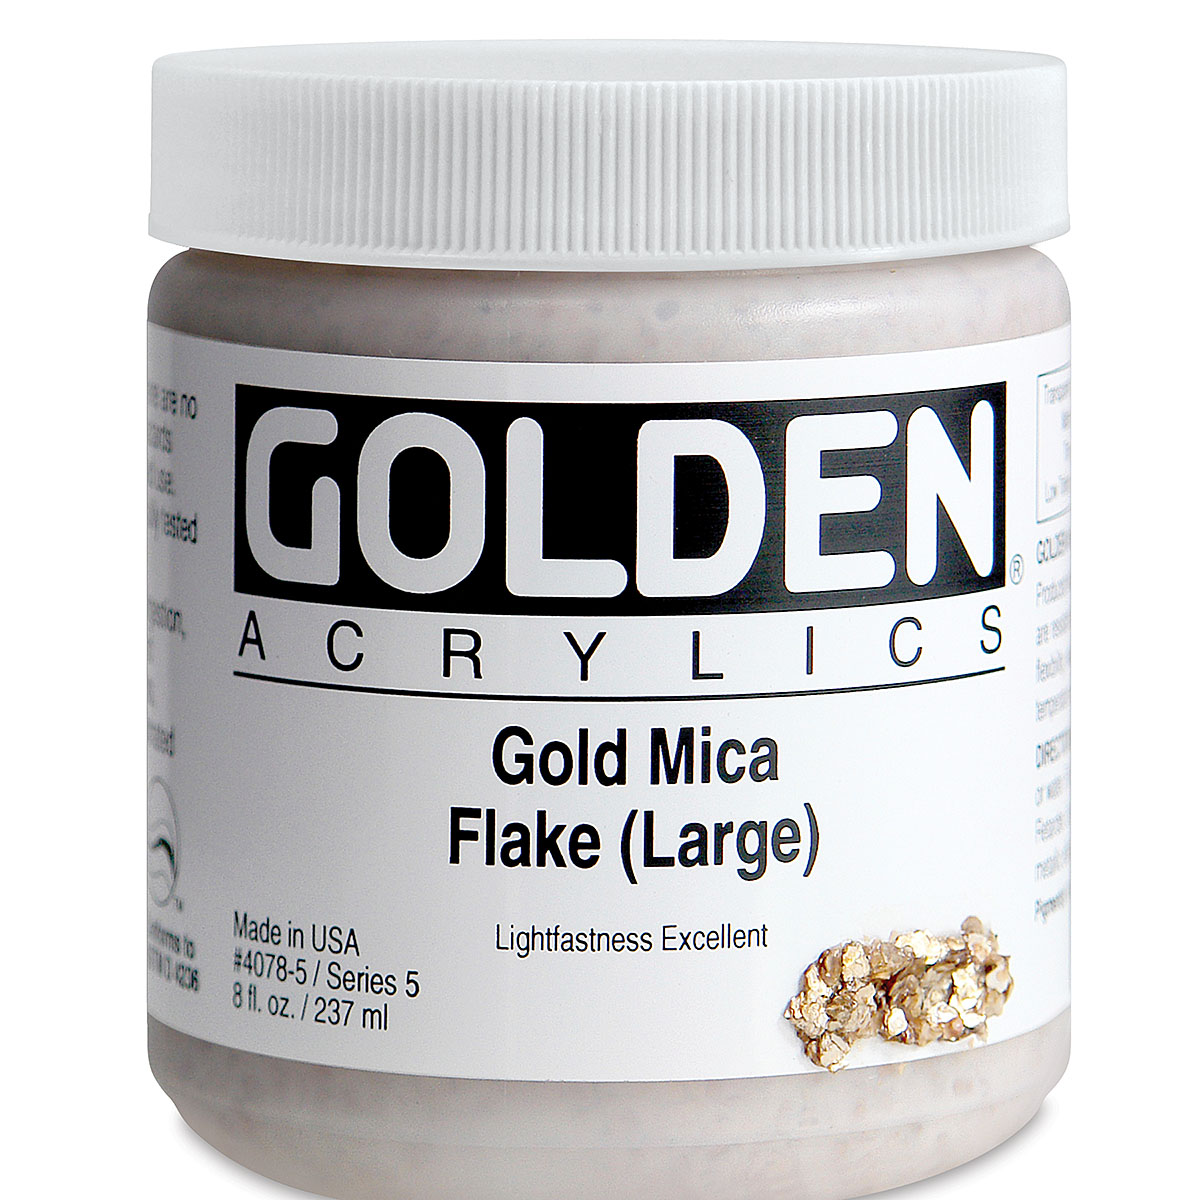 Golden Iridescent Acrylic 8 oz - Micaceous Iron Oxide